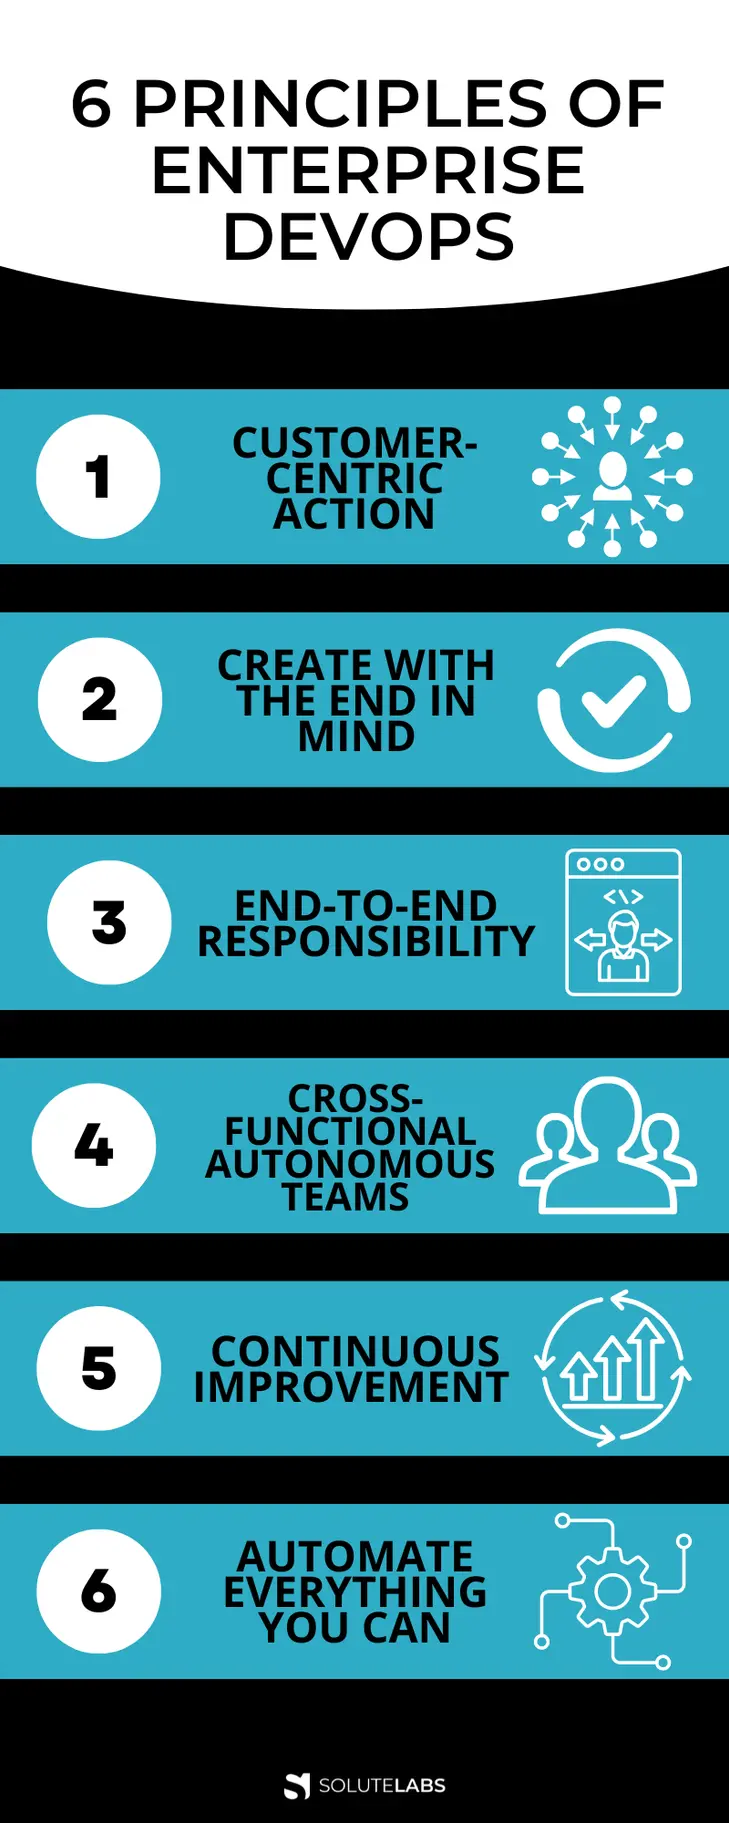 6 Principles of Enterprise DevOps